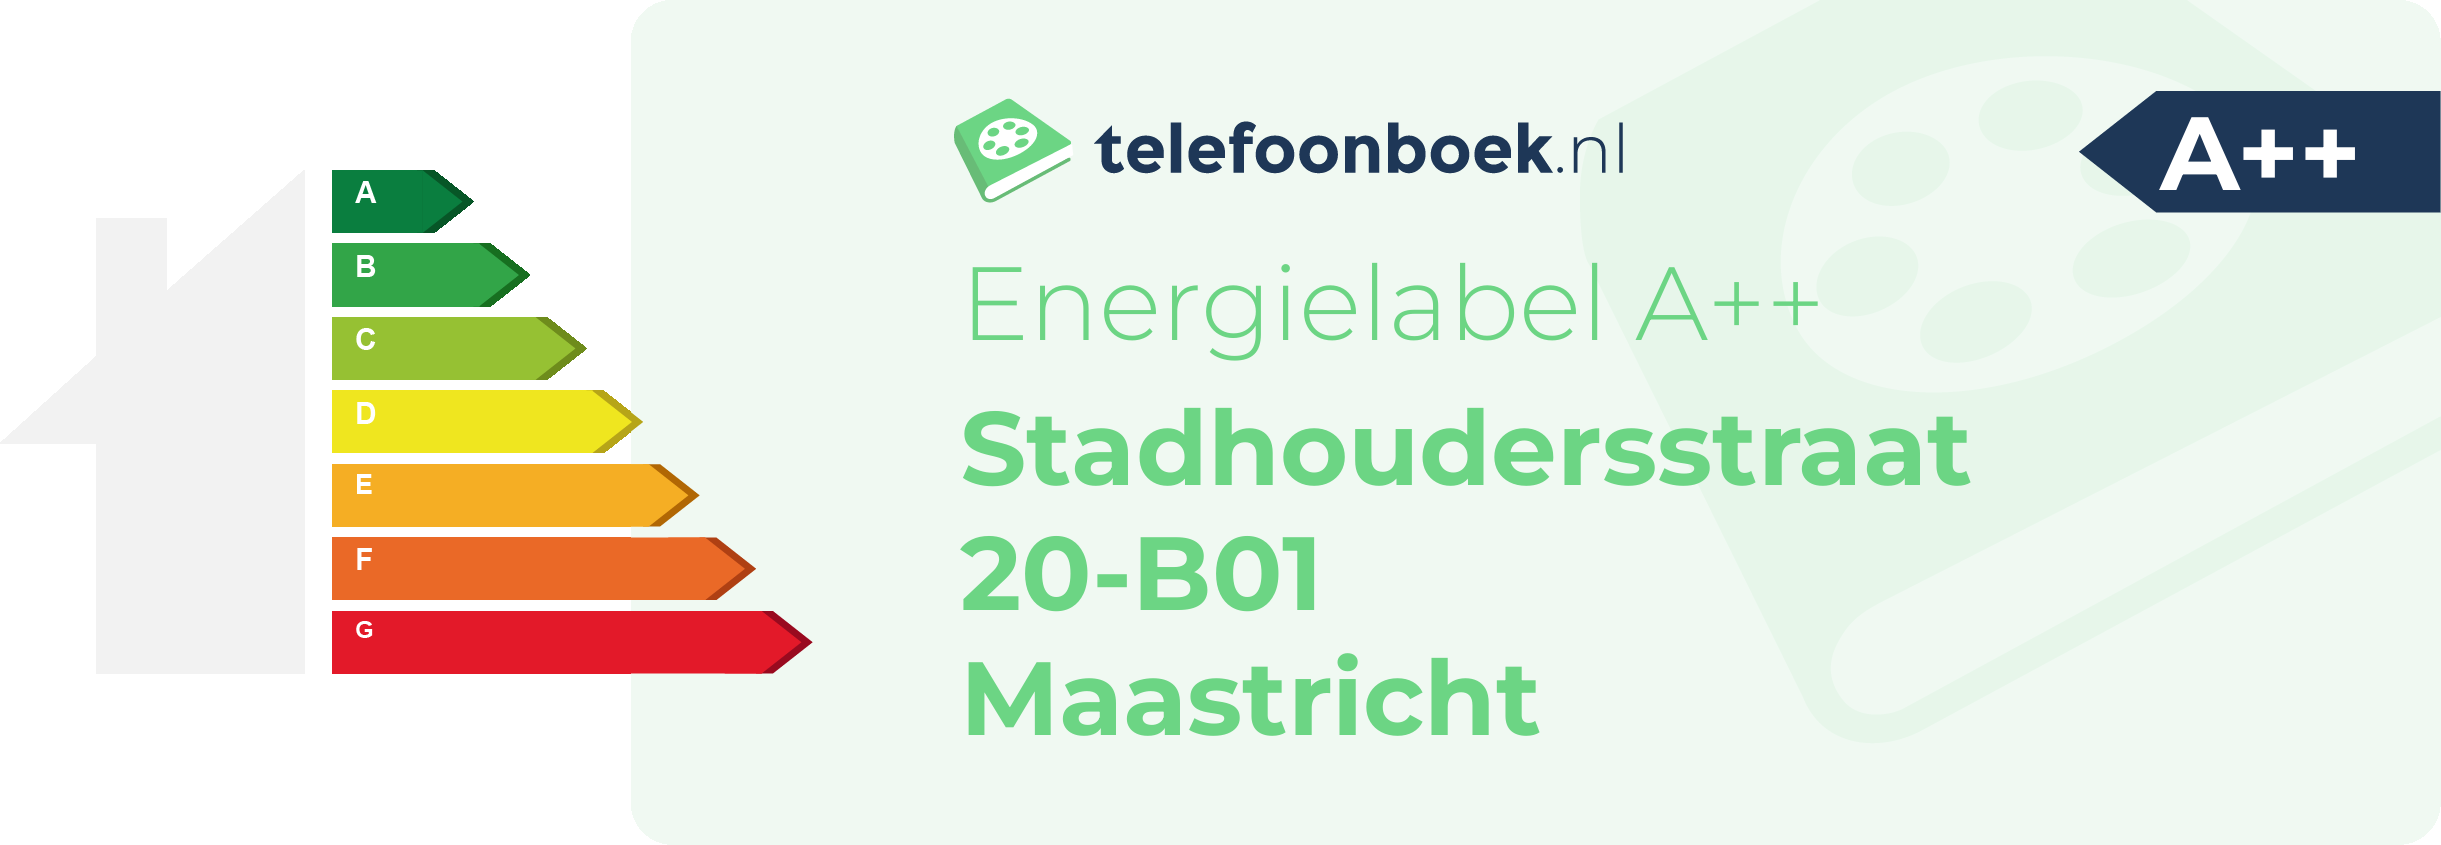 Energielabel Stadhoudersstraat 20-B01 Maastricht